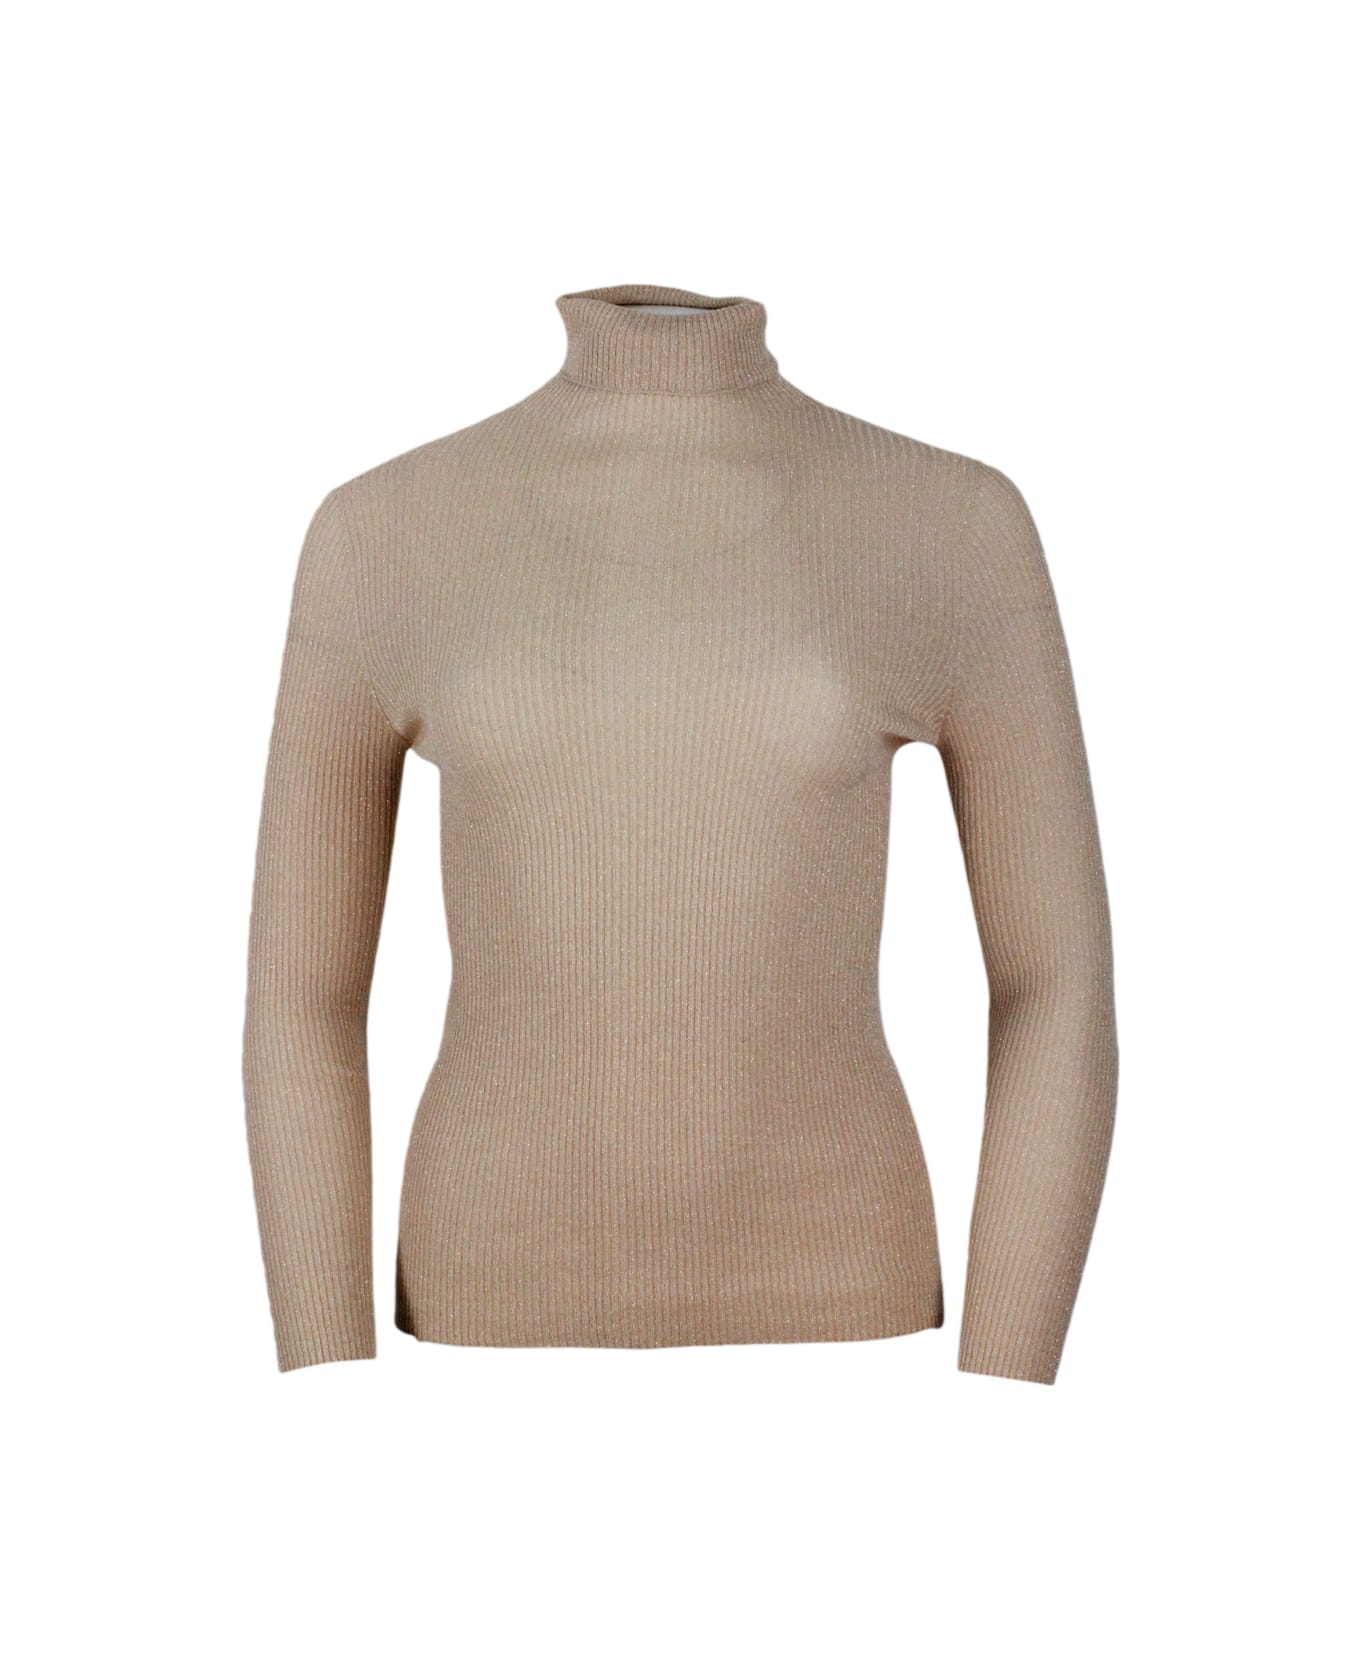 Fabiana Filippi Long-sleeved Turtleneck Sweater In Merino Lamè Embellished With Shiny Lurex That Gives Brightness - Camel Gold ニットウェア